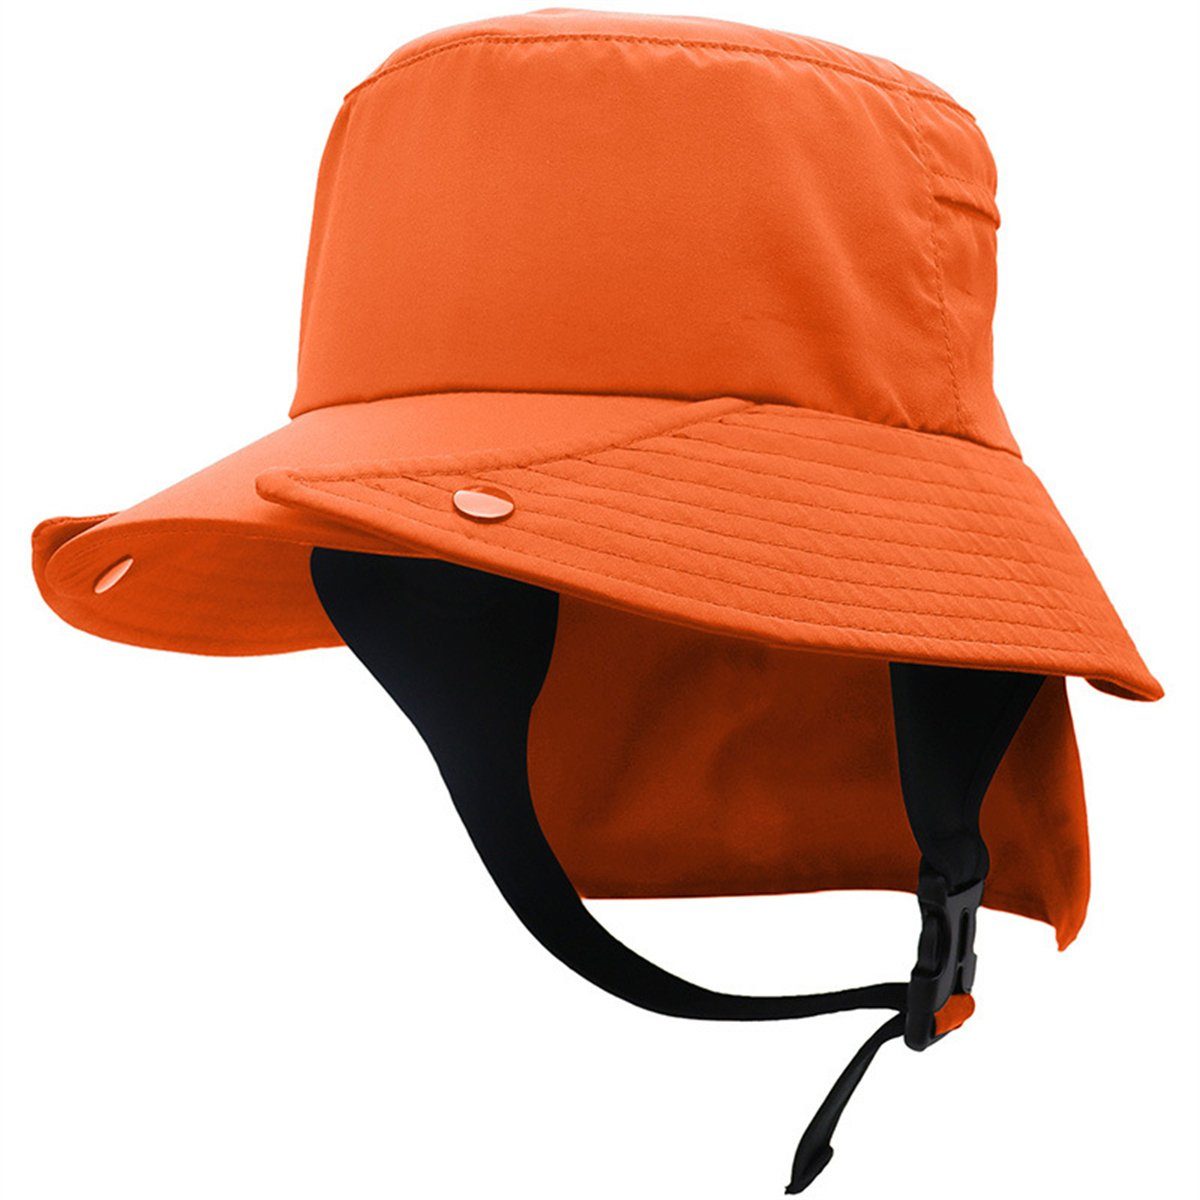 Discaver Schiebermütze UPF50+ abnehmbarer Fischerhut mit großer Krempe Schnell trocknende Mütze für Rad- und Outdoor-Abenteuer orange